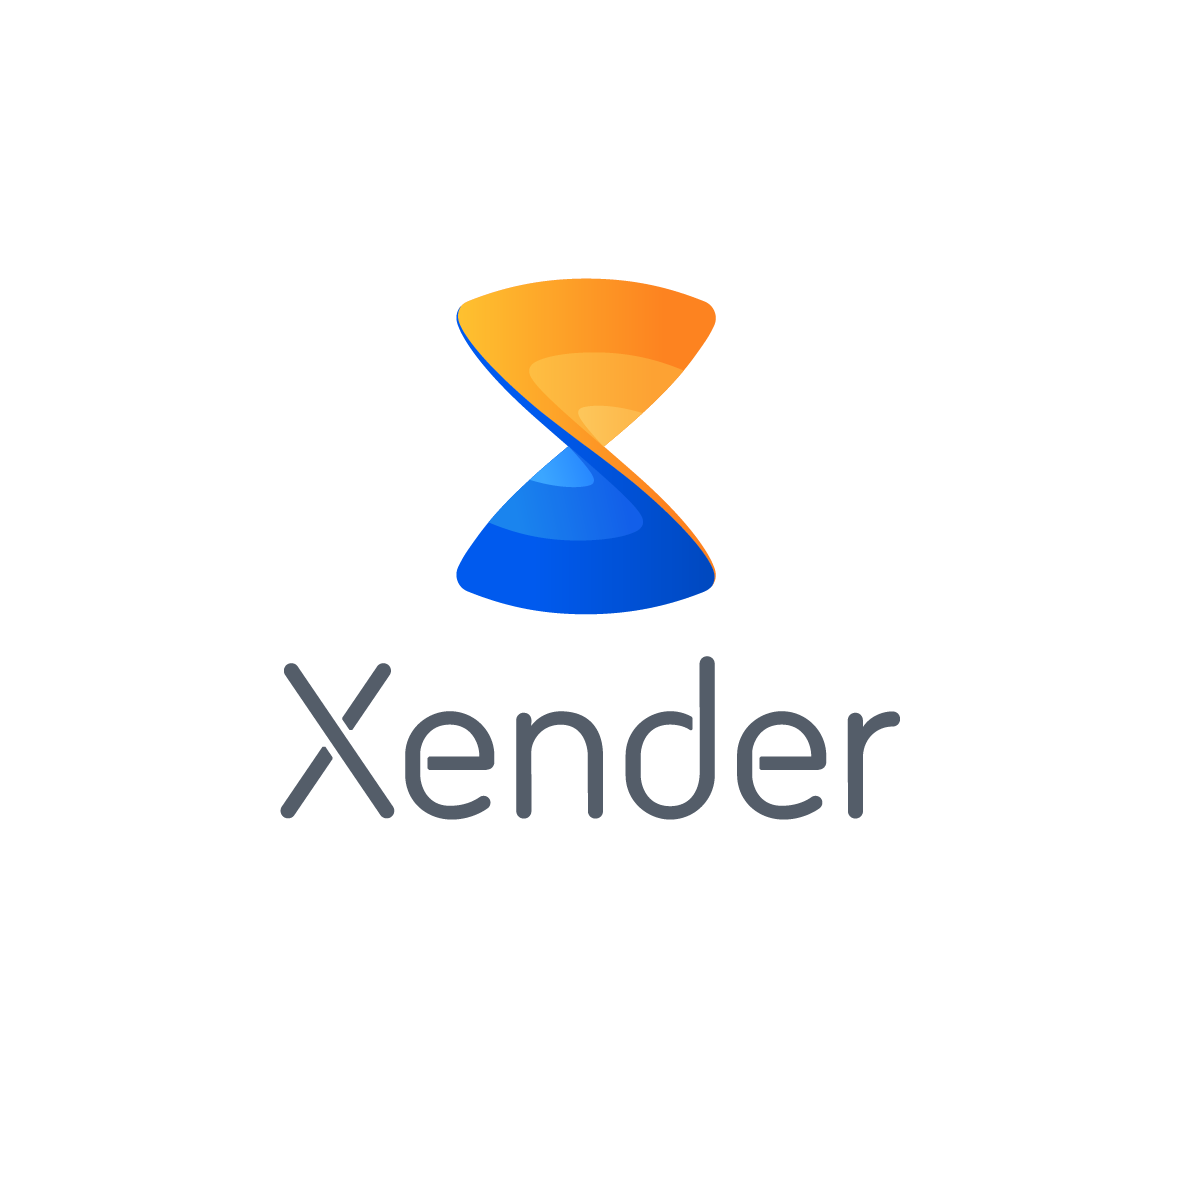 xender app download now